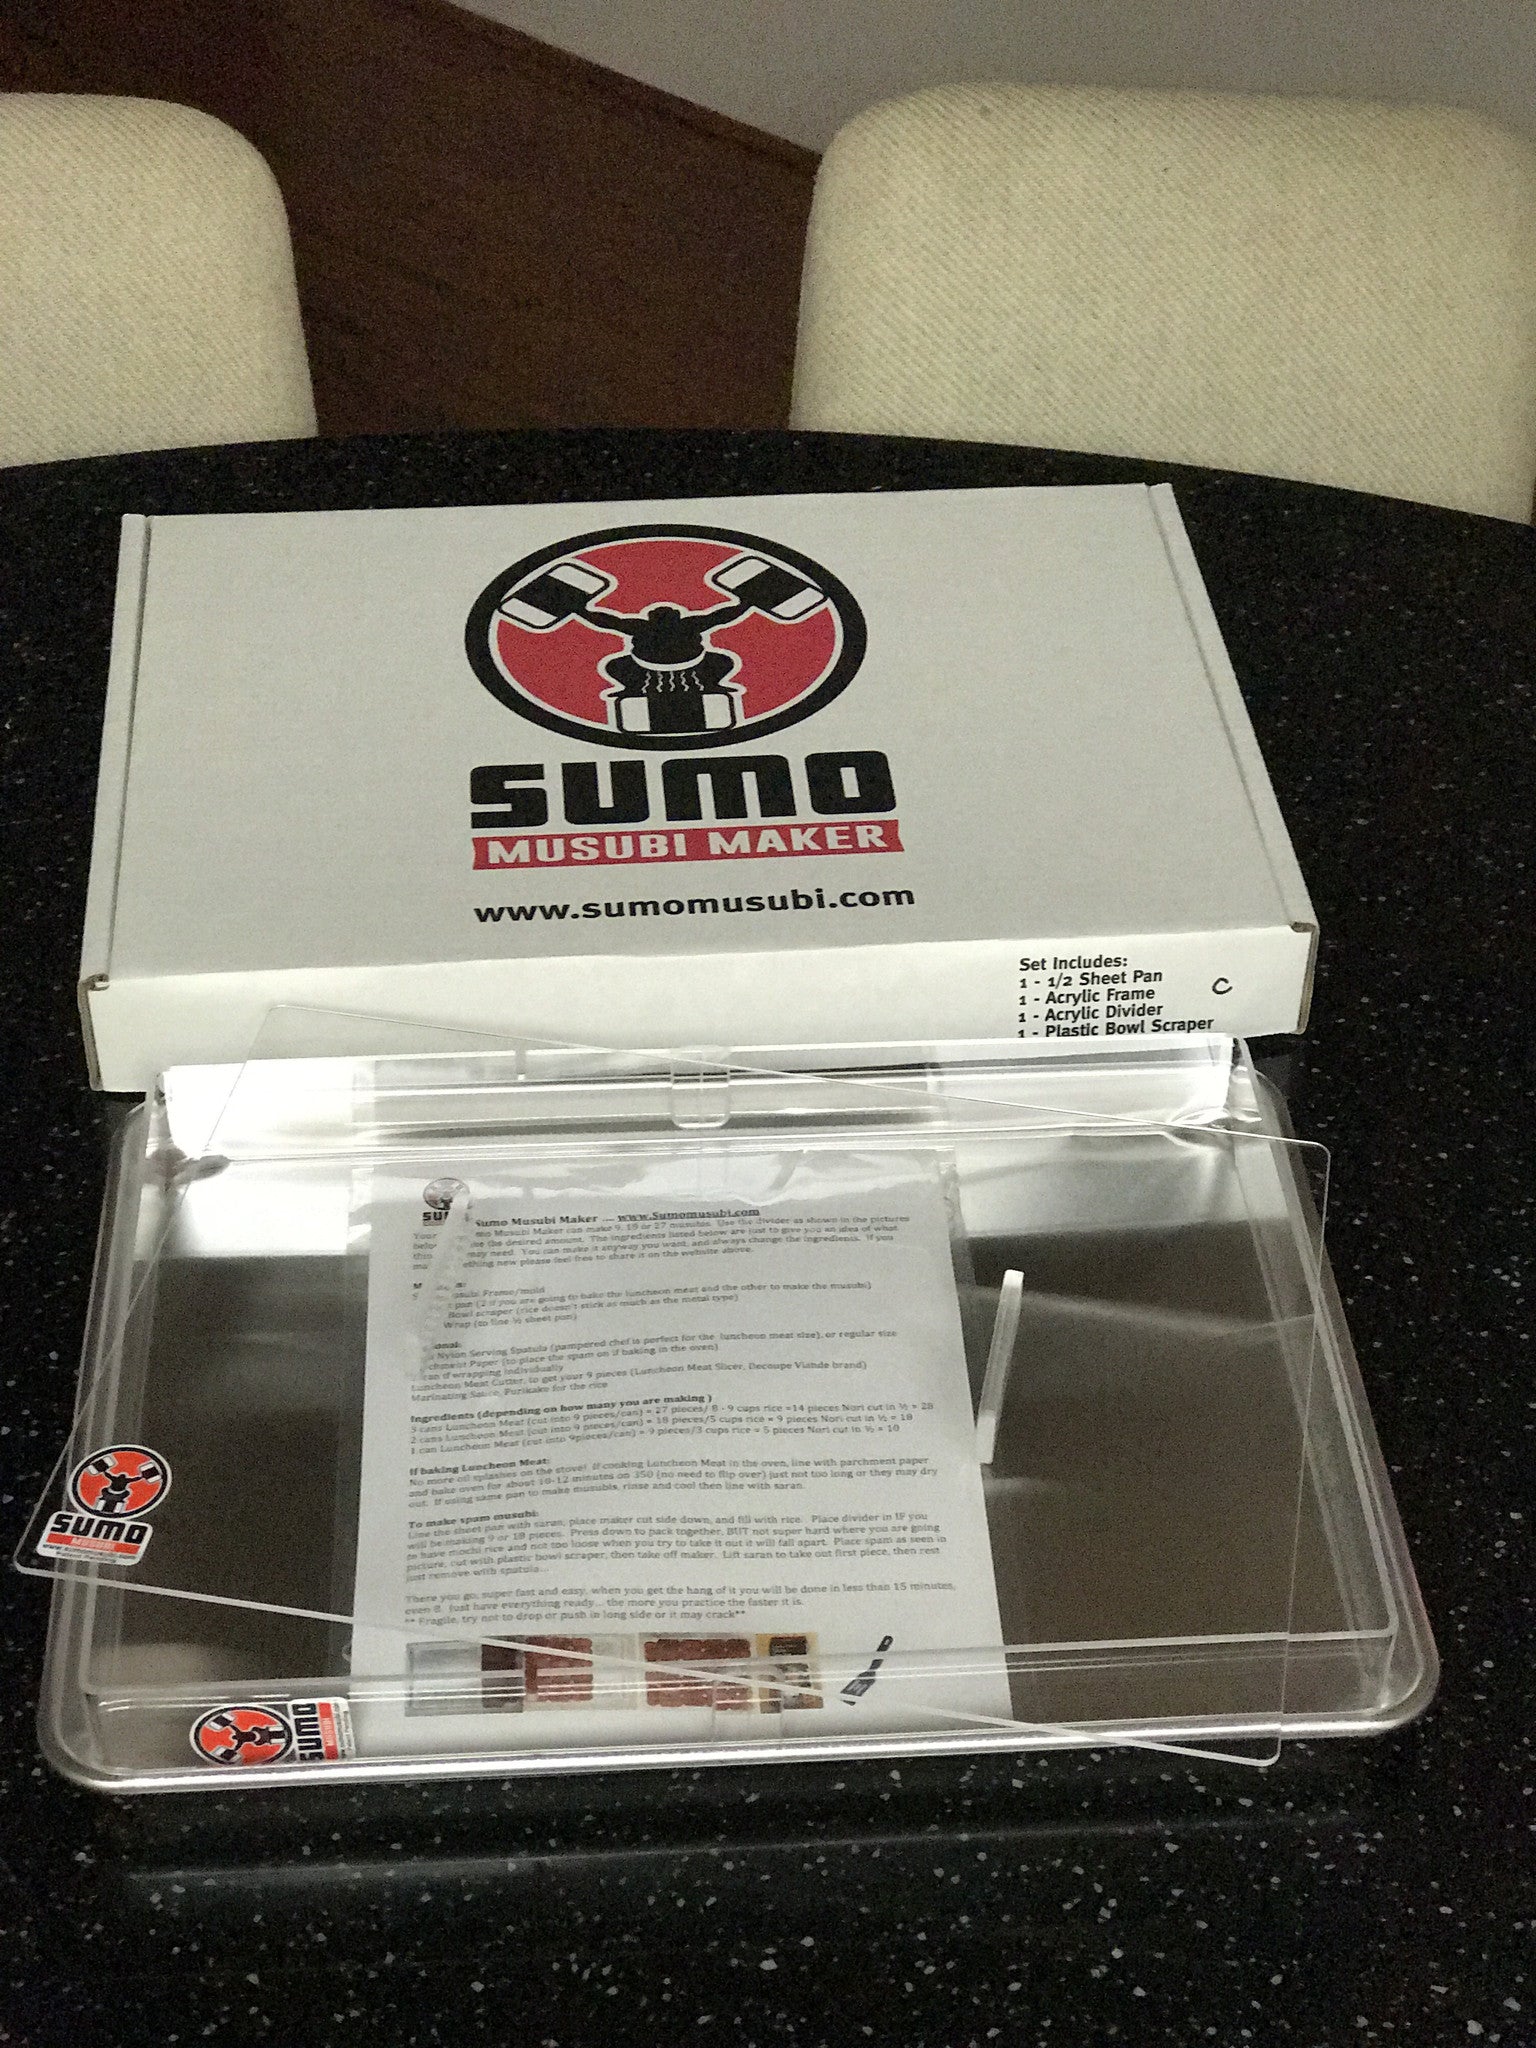 Sumo Musubi Maker – Sumo Musubi LLC